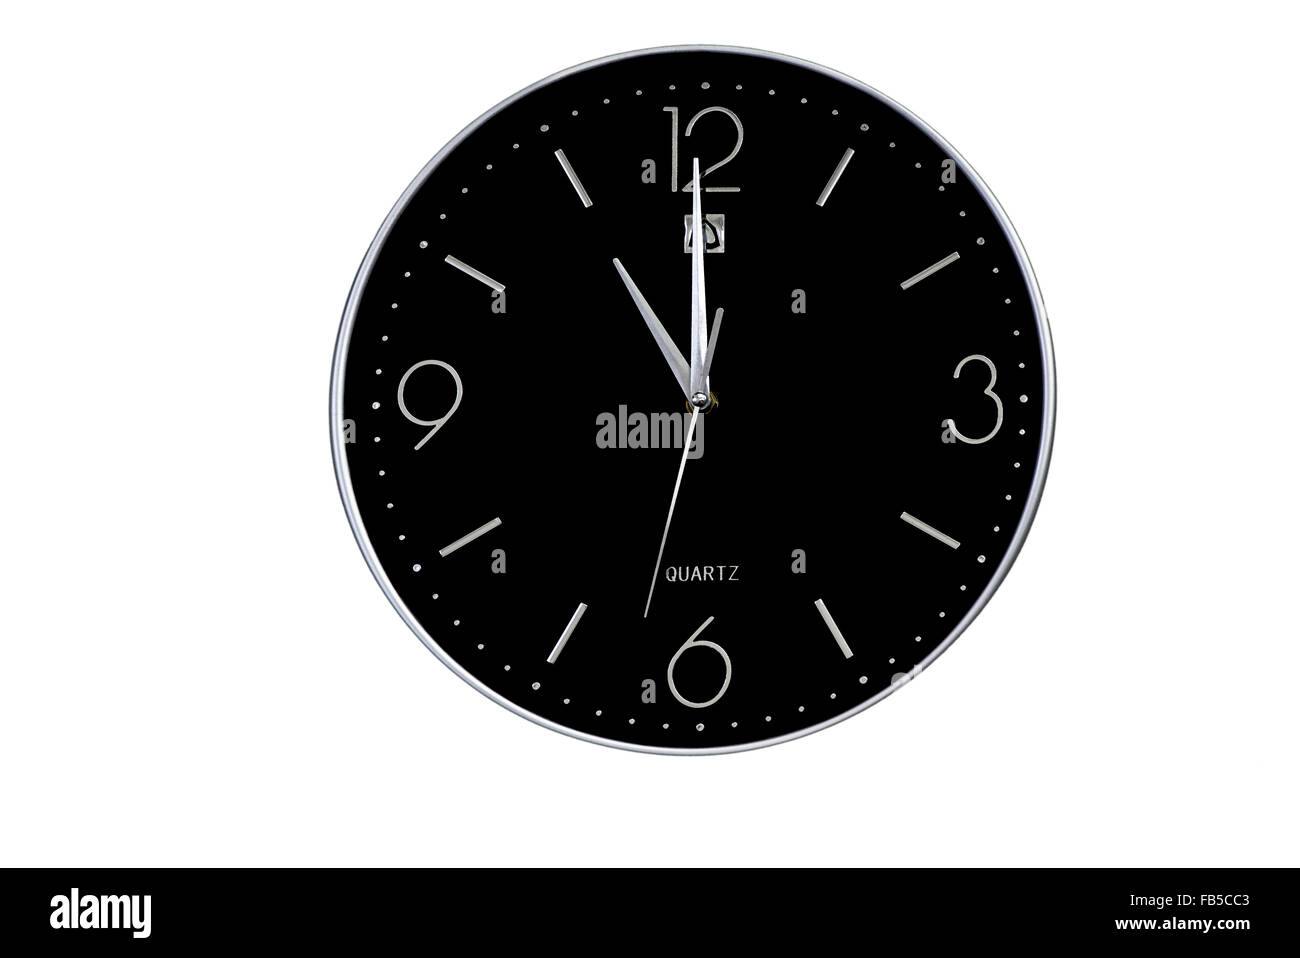 Horloge, face noire. Découpe d'une horloge murale analogique à face noire sur fond blanc. Banque D'Images